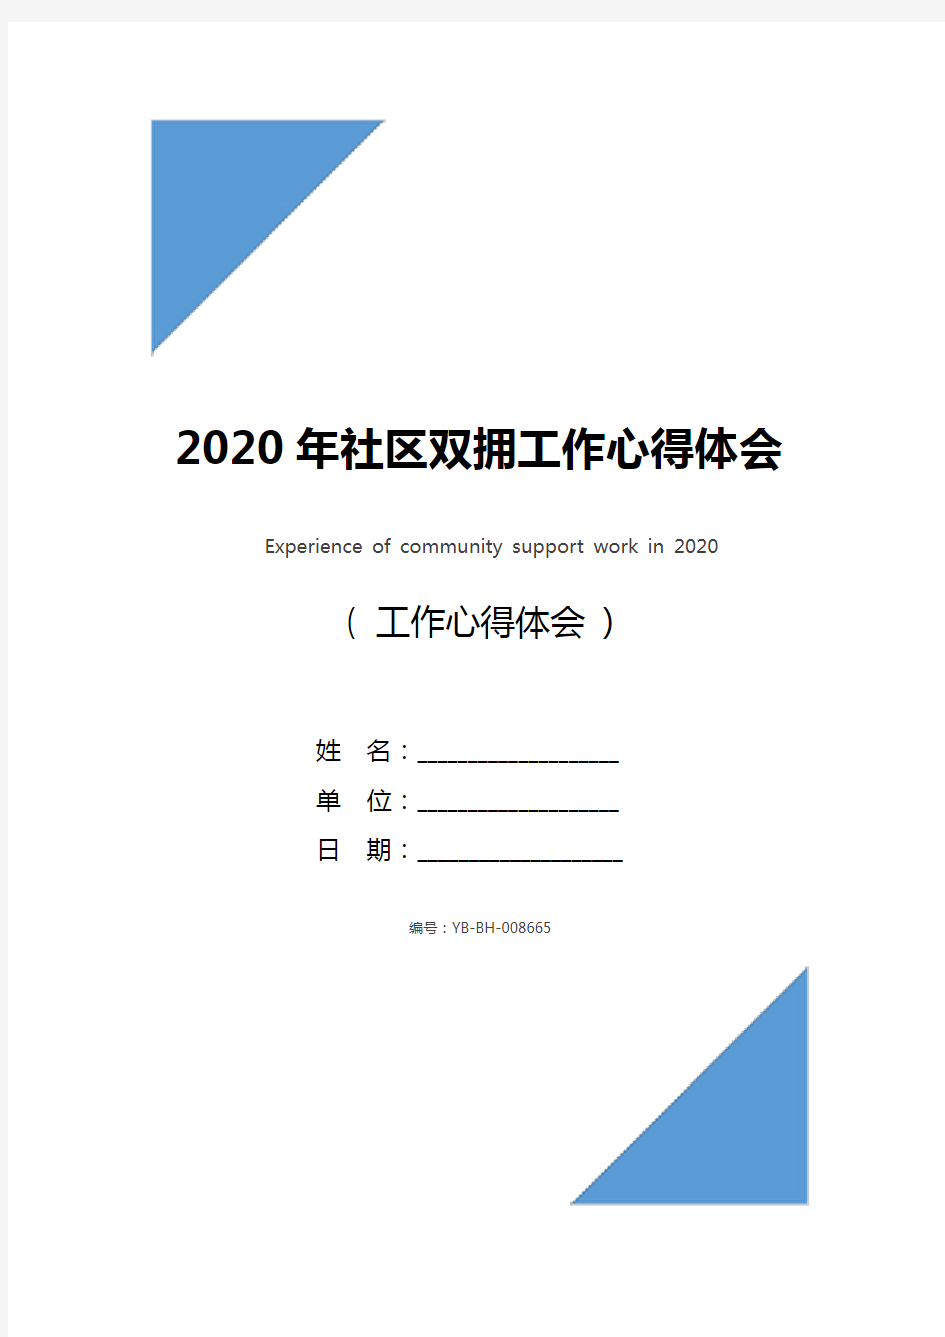 2020年社区双拥工作心得体会_1